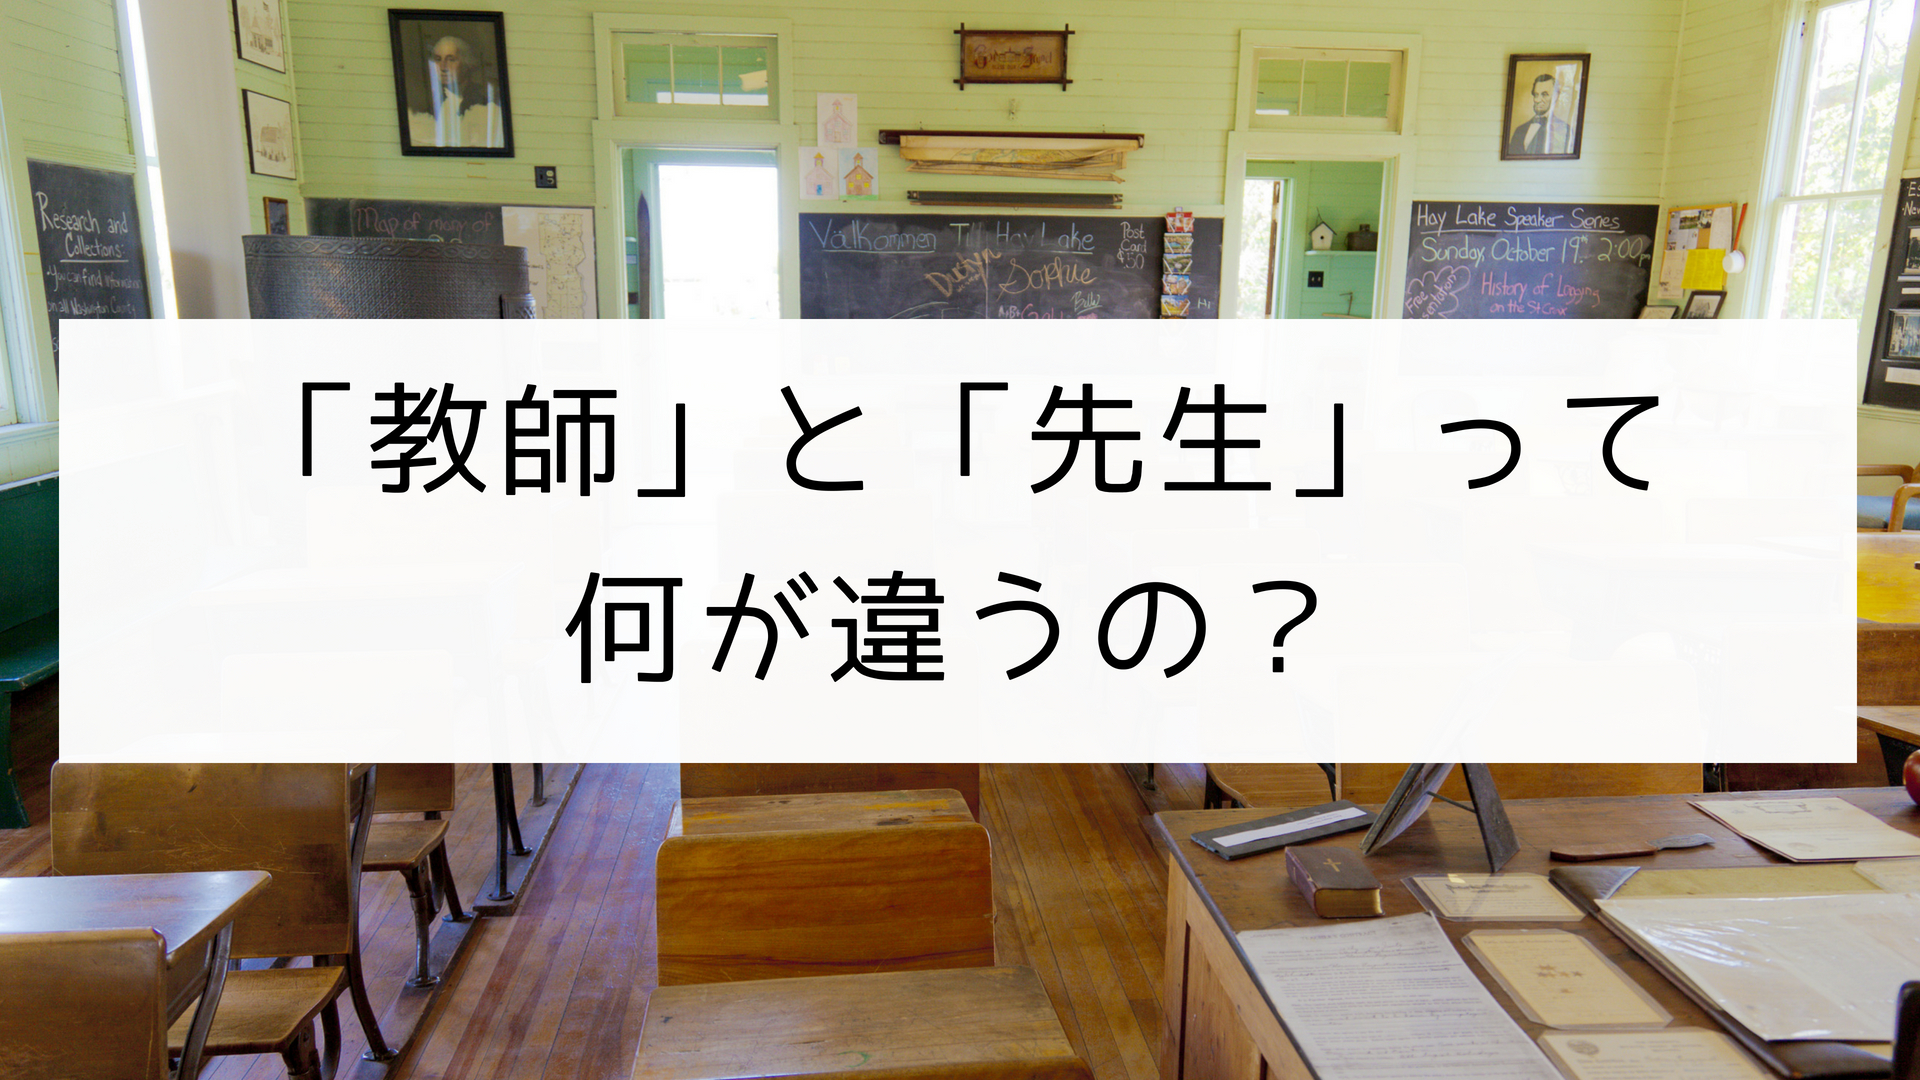 日本の言葉 教師 と 先生 って何が違うの 日本の言葉と文化